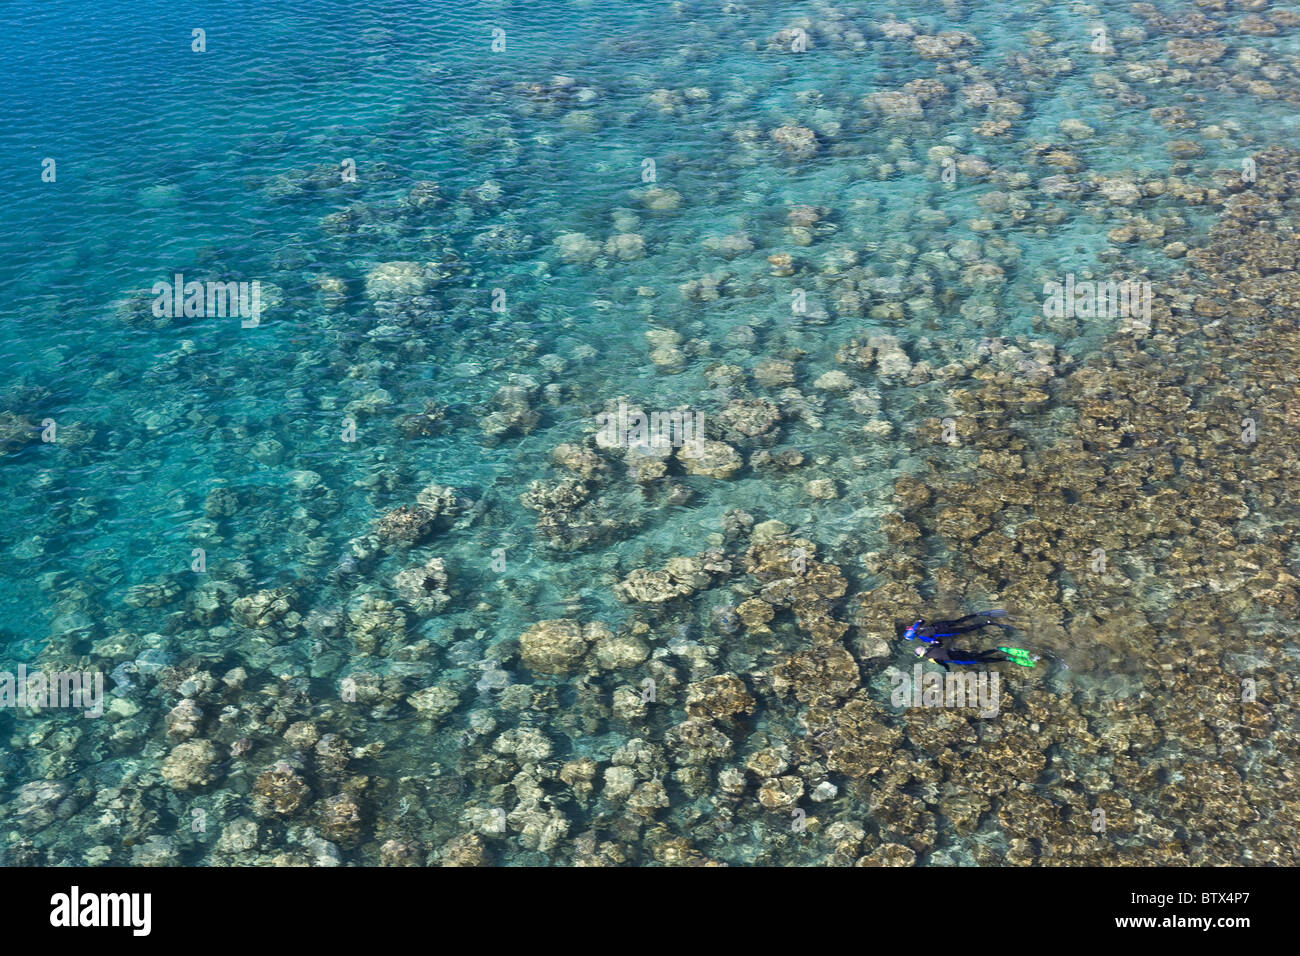 Schnorchler schwimmen über eine harte Korallenriff innerhalb von Palaus geschützten westlichen Lagune.  Dieses Riff ist seit dem zweiten Weltkrieg gewachsen. Stockfoto